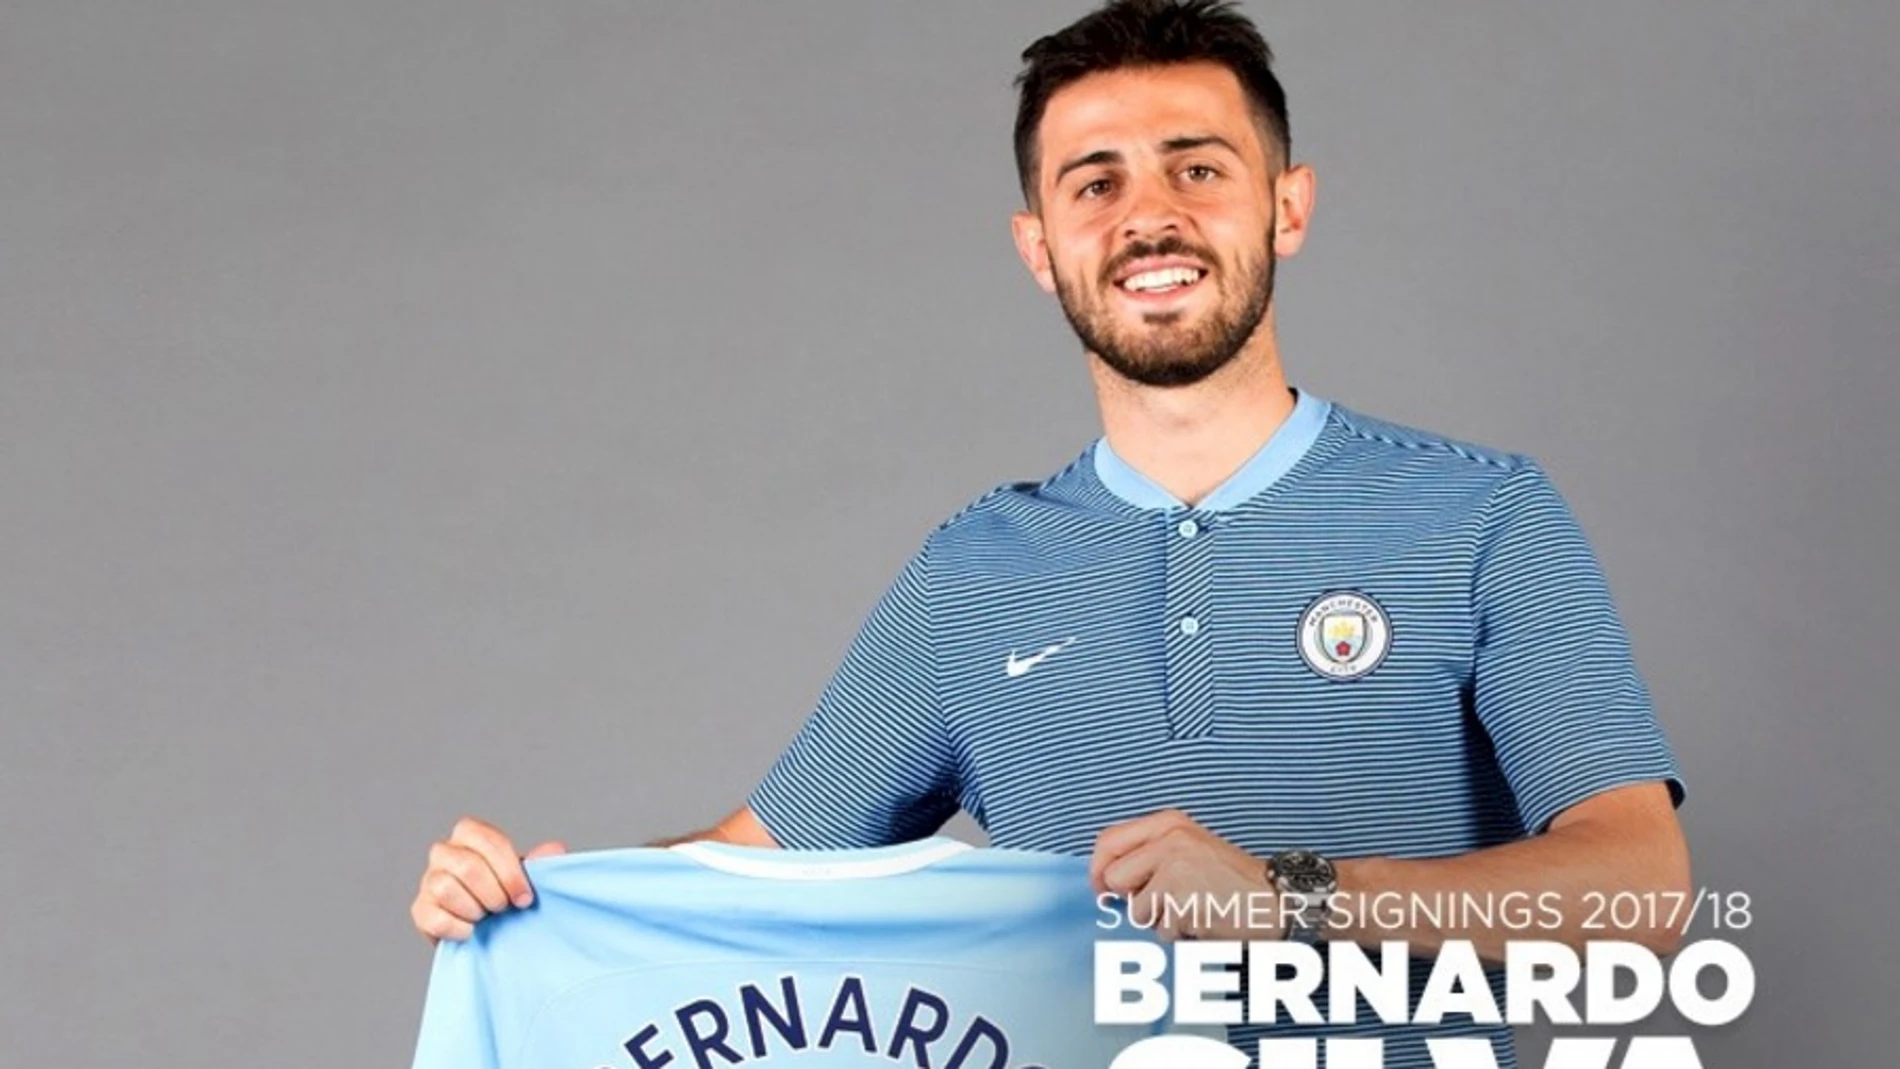 Bernardo Silva, nuevo jugador del Manchester City